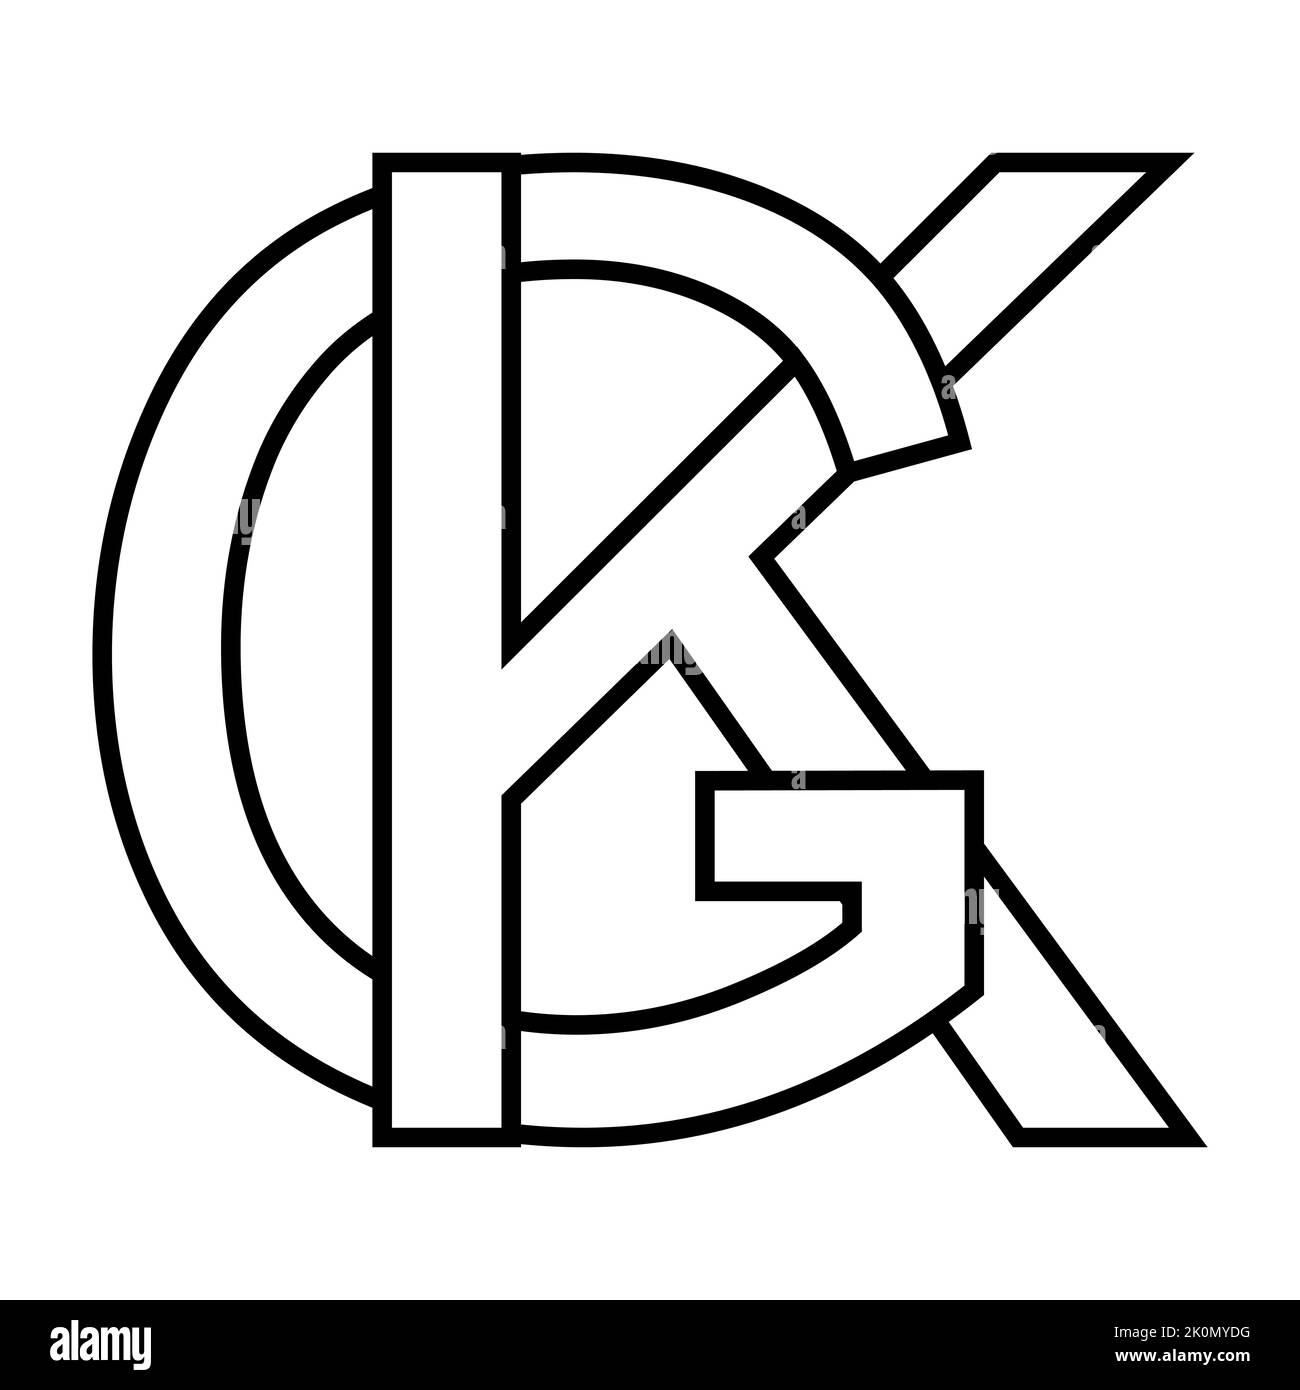 Logo sign gk kg, icon nft interlaced letters g k Stock Vector